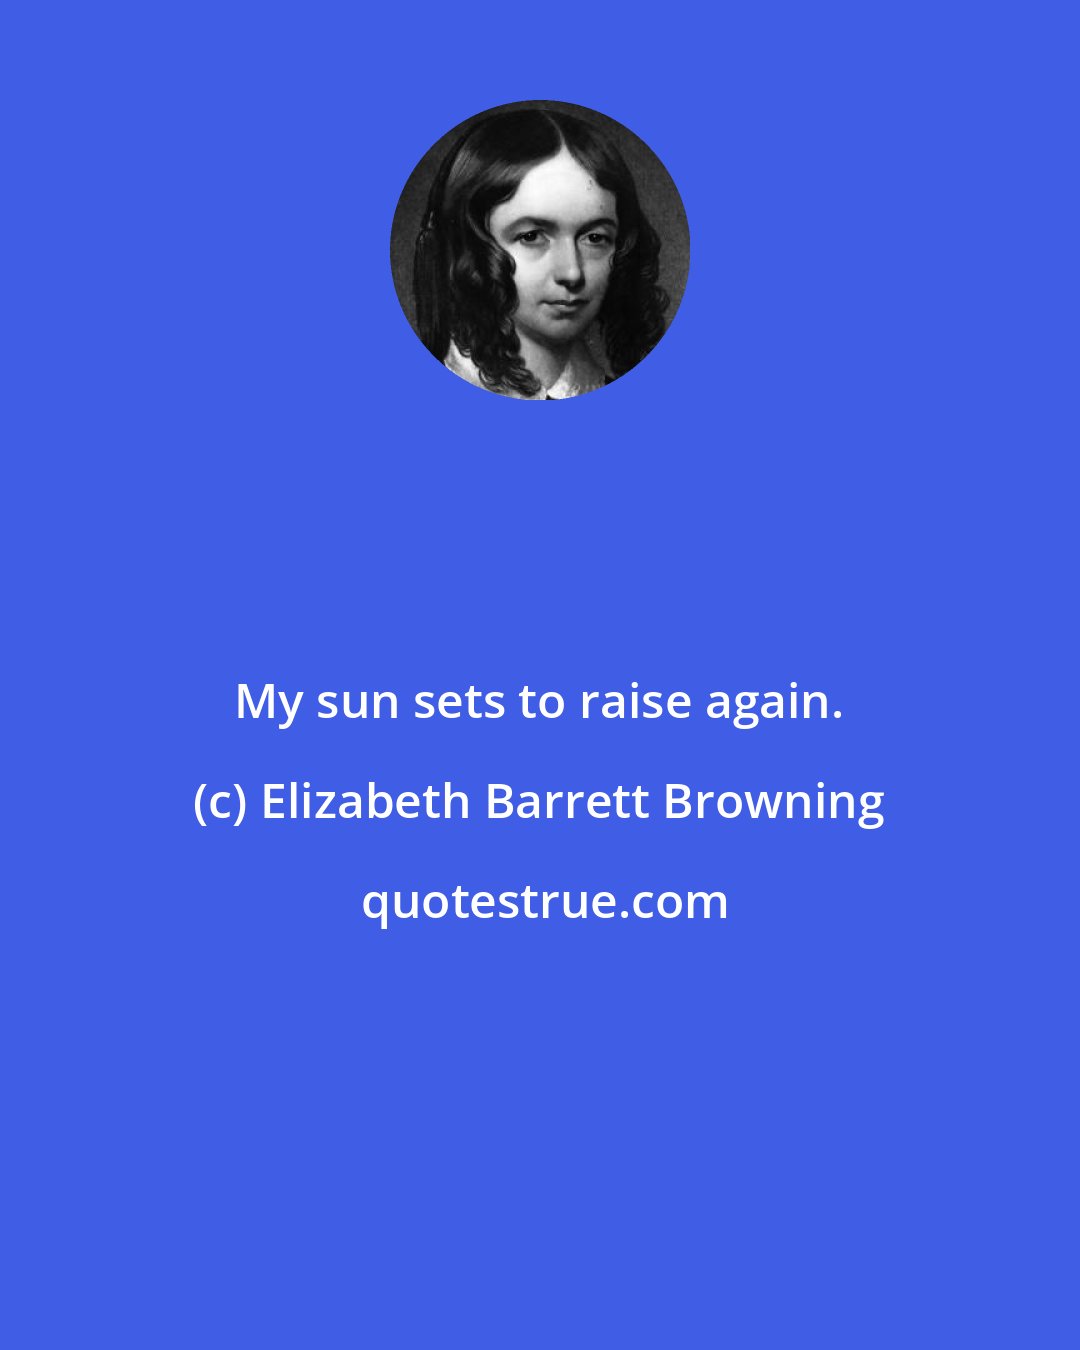 Elizabeth Barrett Browning: My sun sets to raise again.